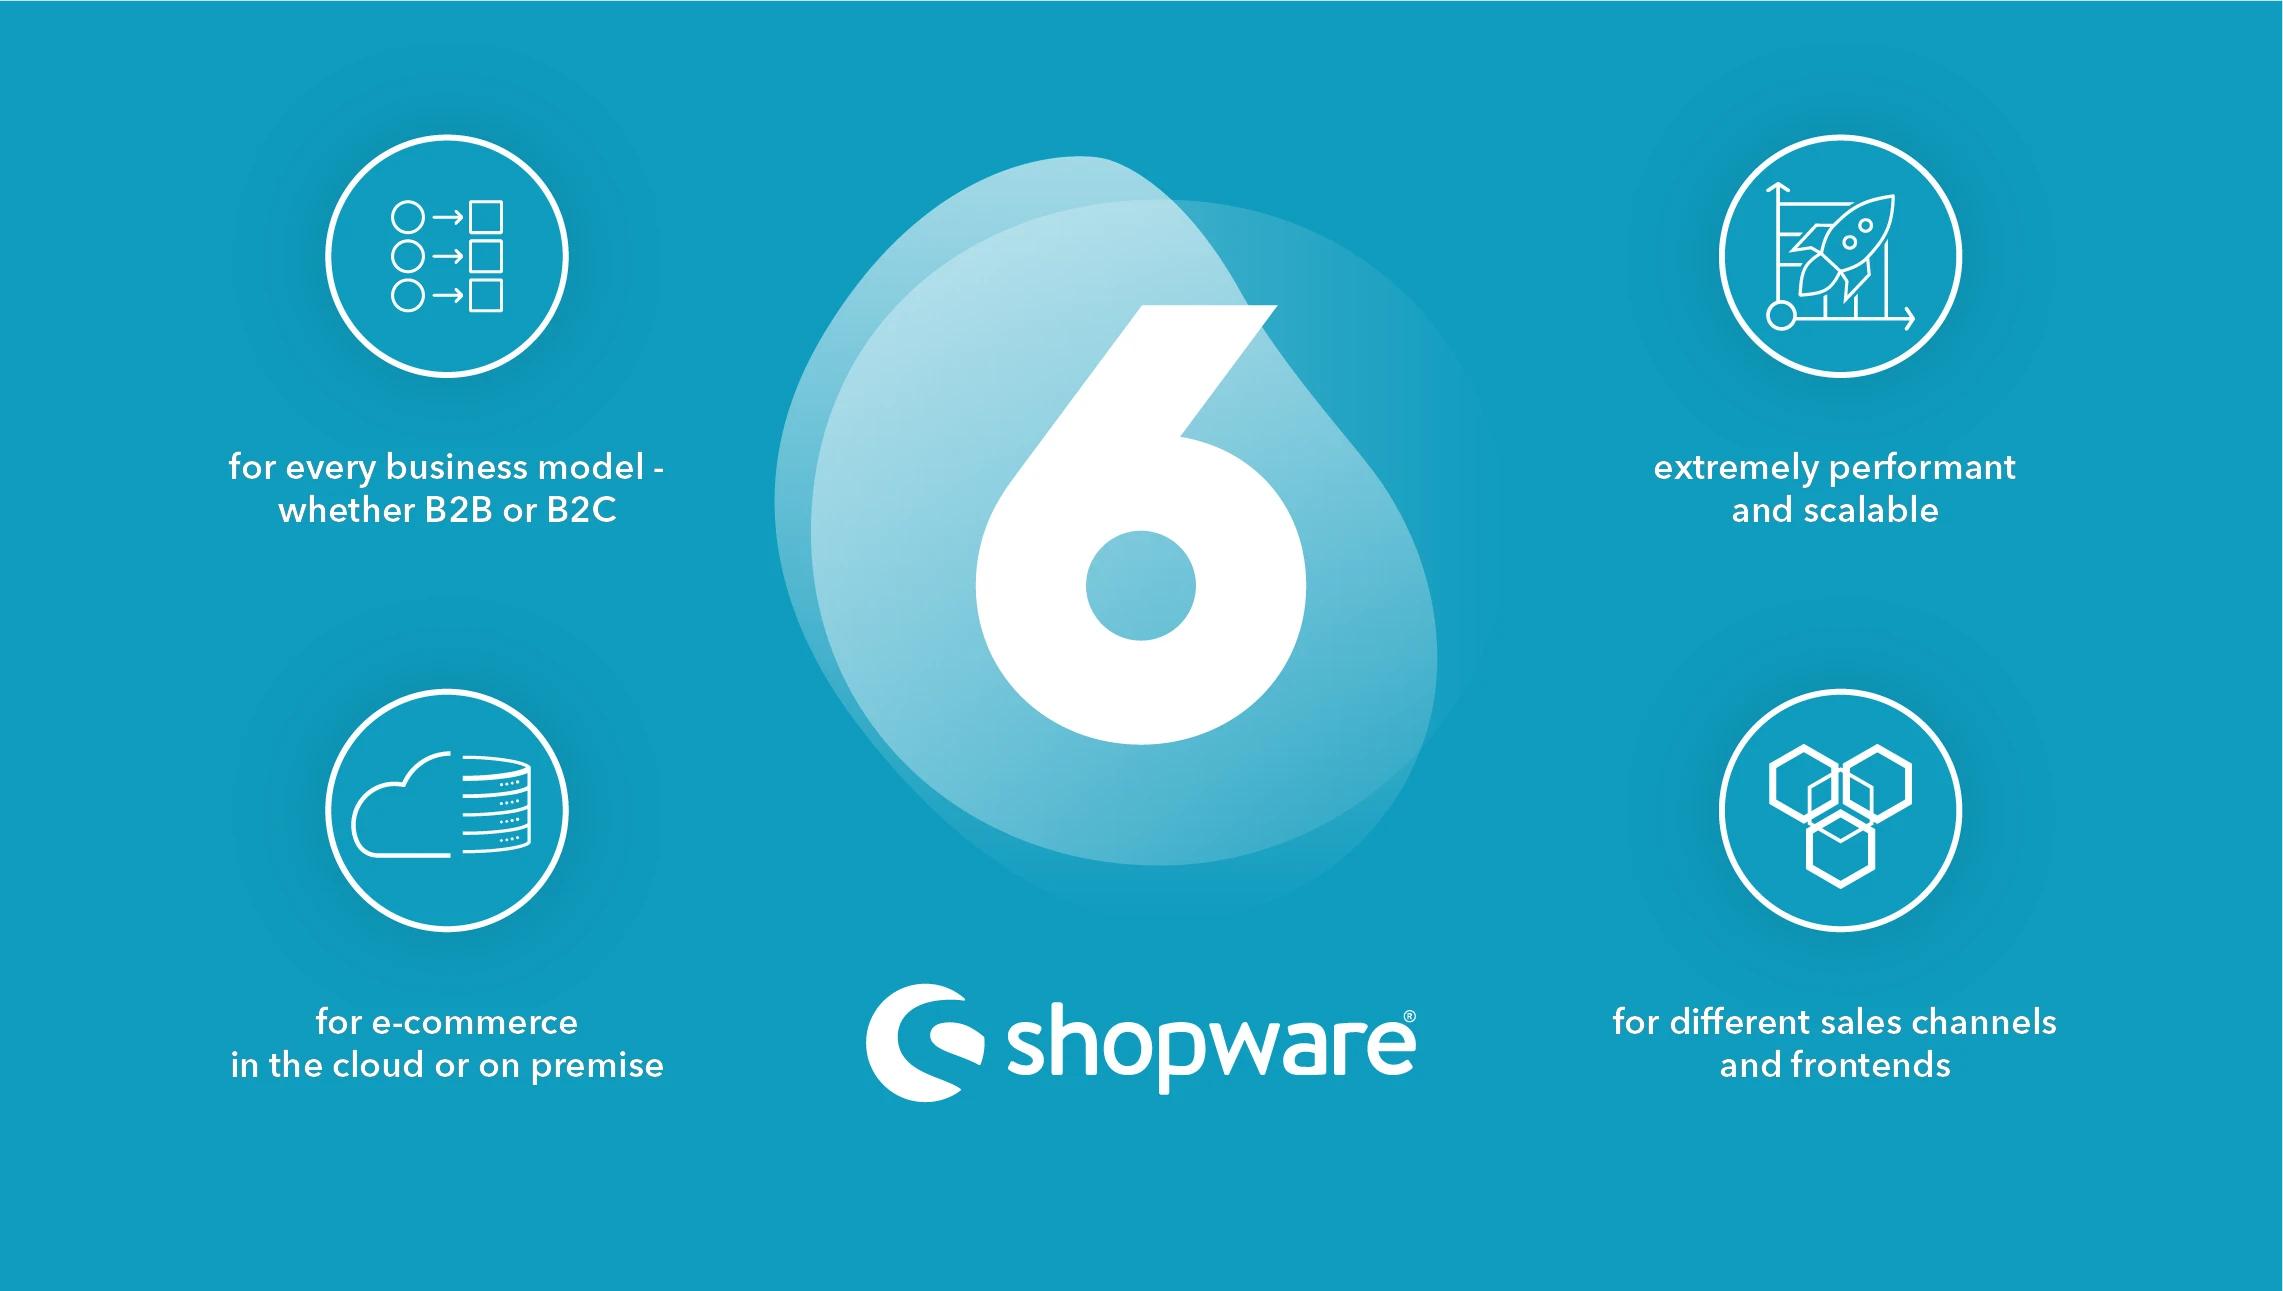 Shopware vereint Technik und Design – das intuitive Shopsystem